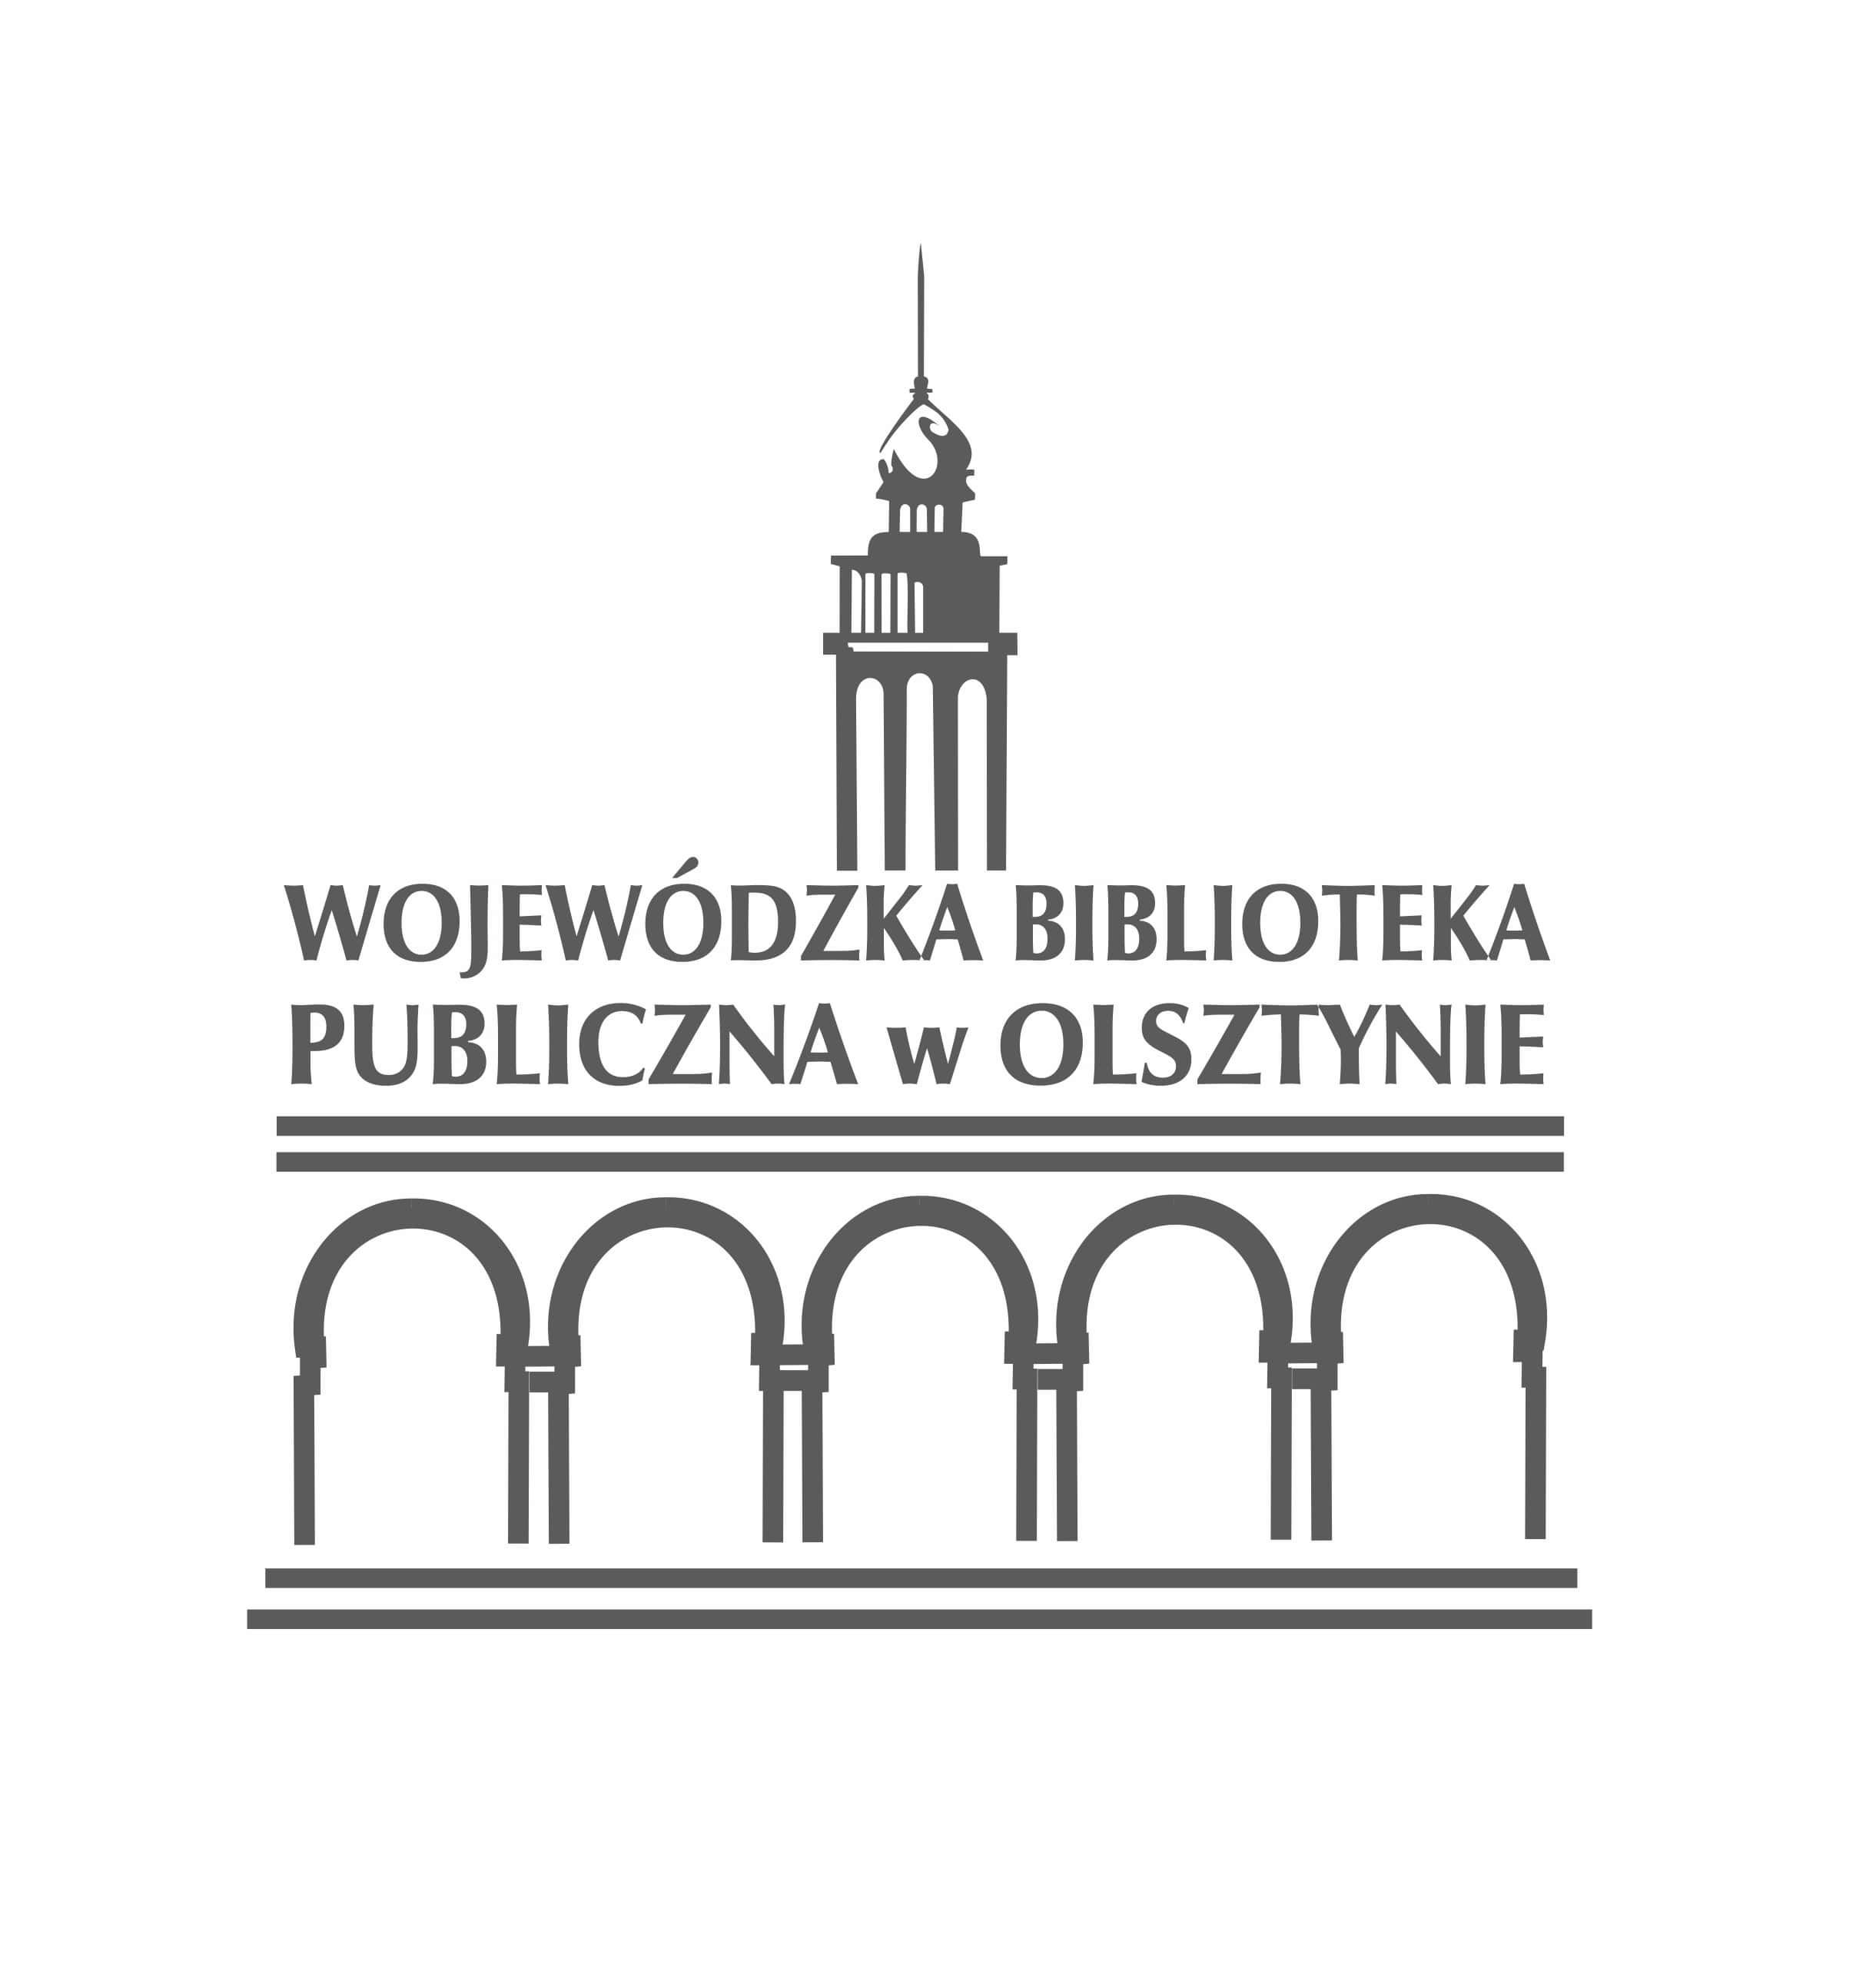 Wojewódzka Biblioteka Publiczna w Olsztynie z najnowocześniejszym systemem bibliotecznym